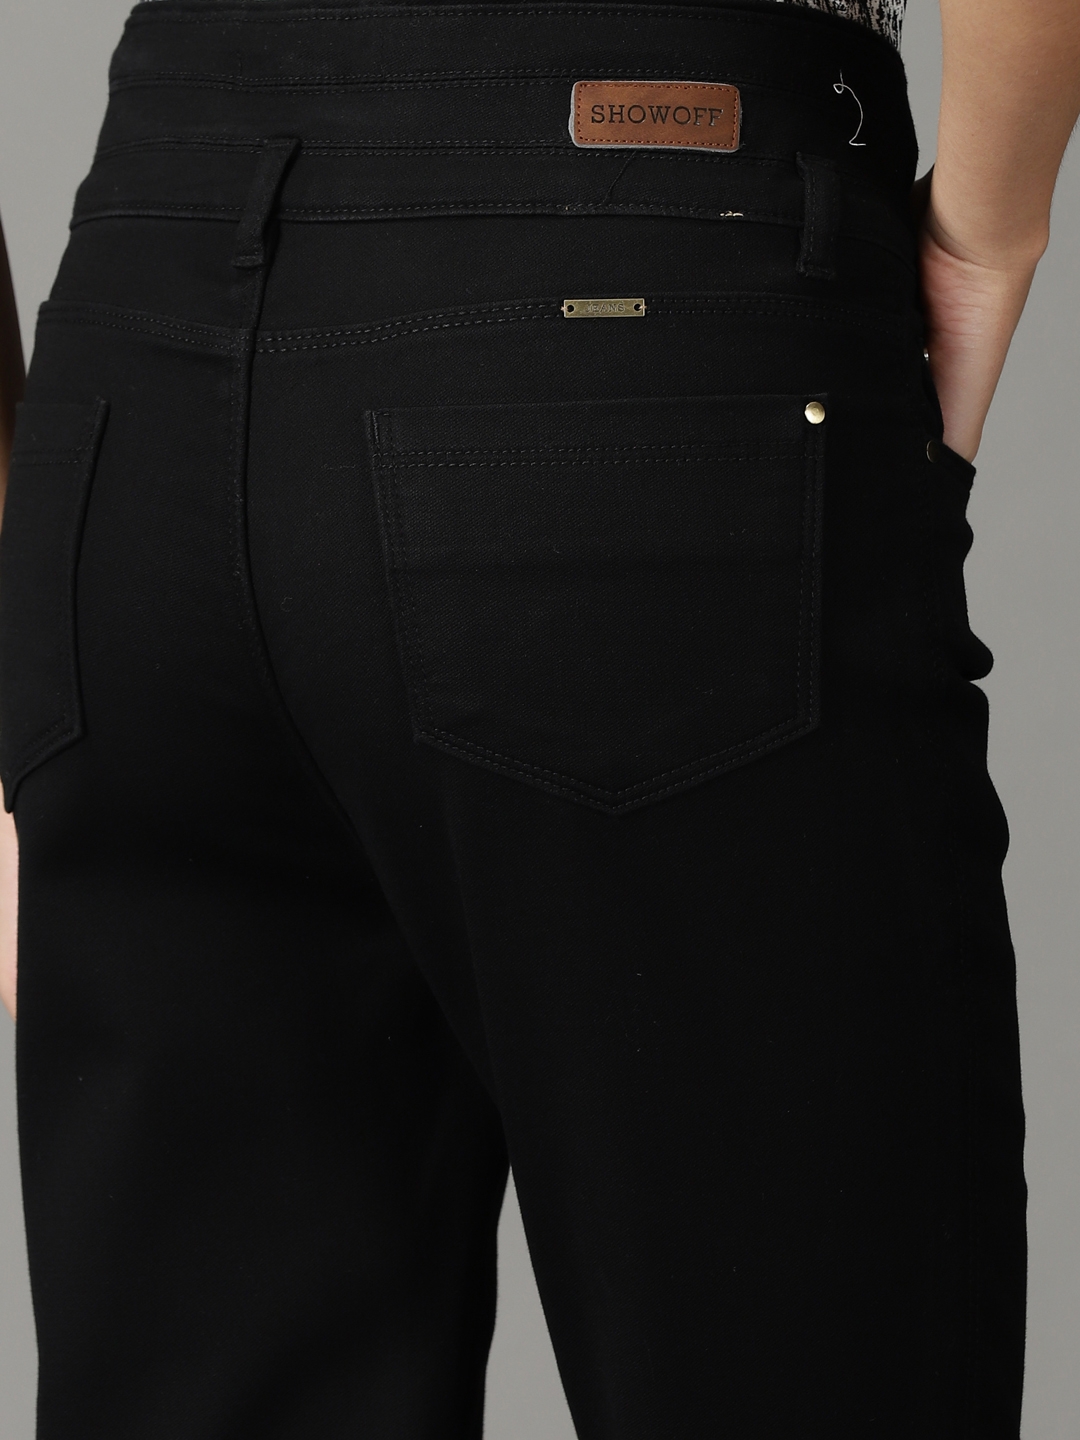 Showoff | SHOWOFF Women Black Solid  Slim Fit Jeans 6